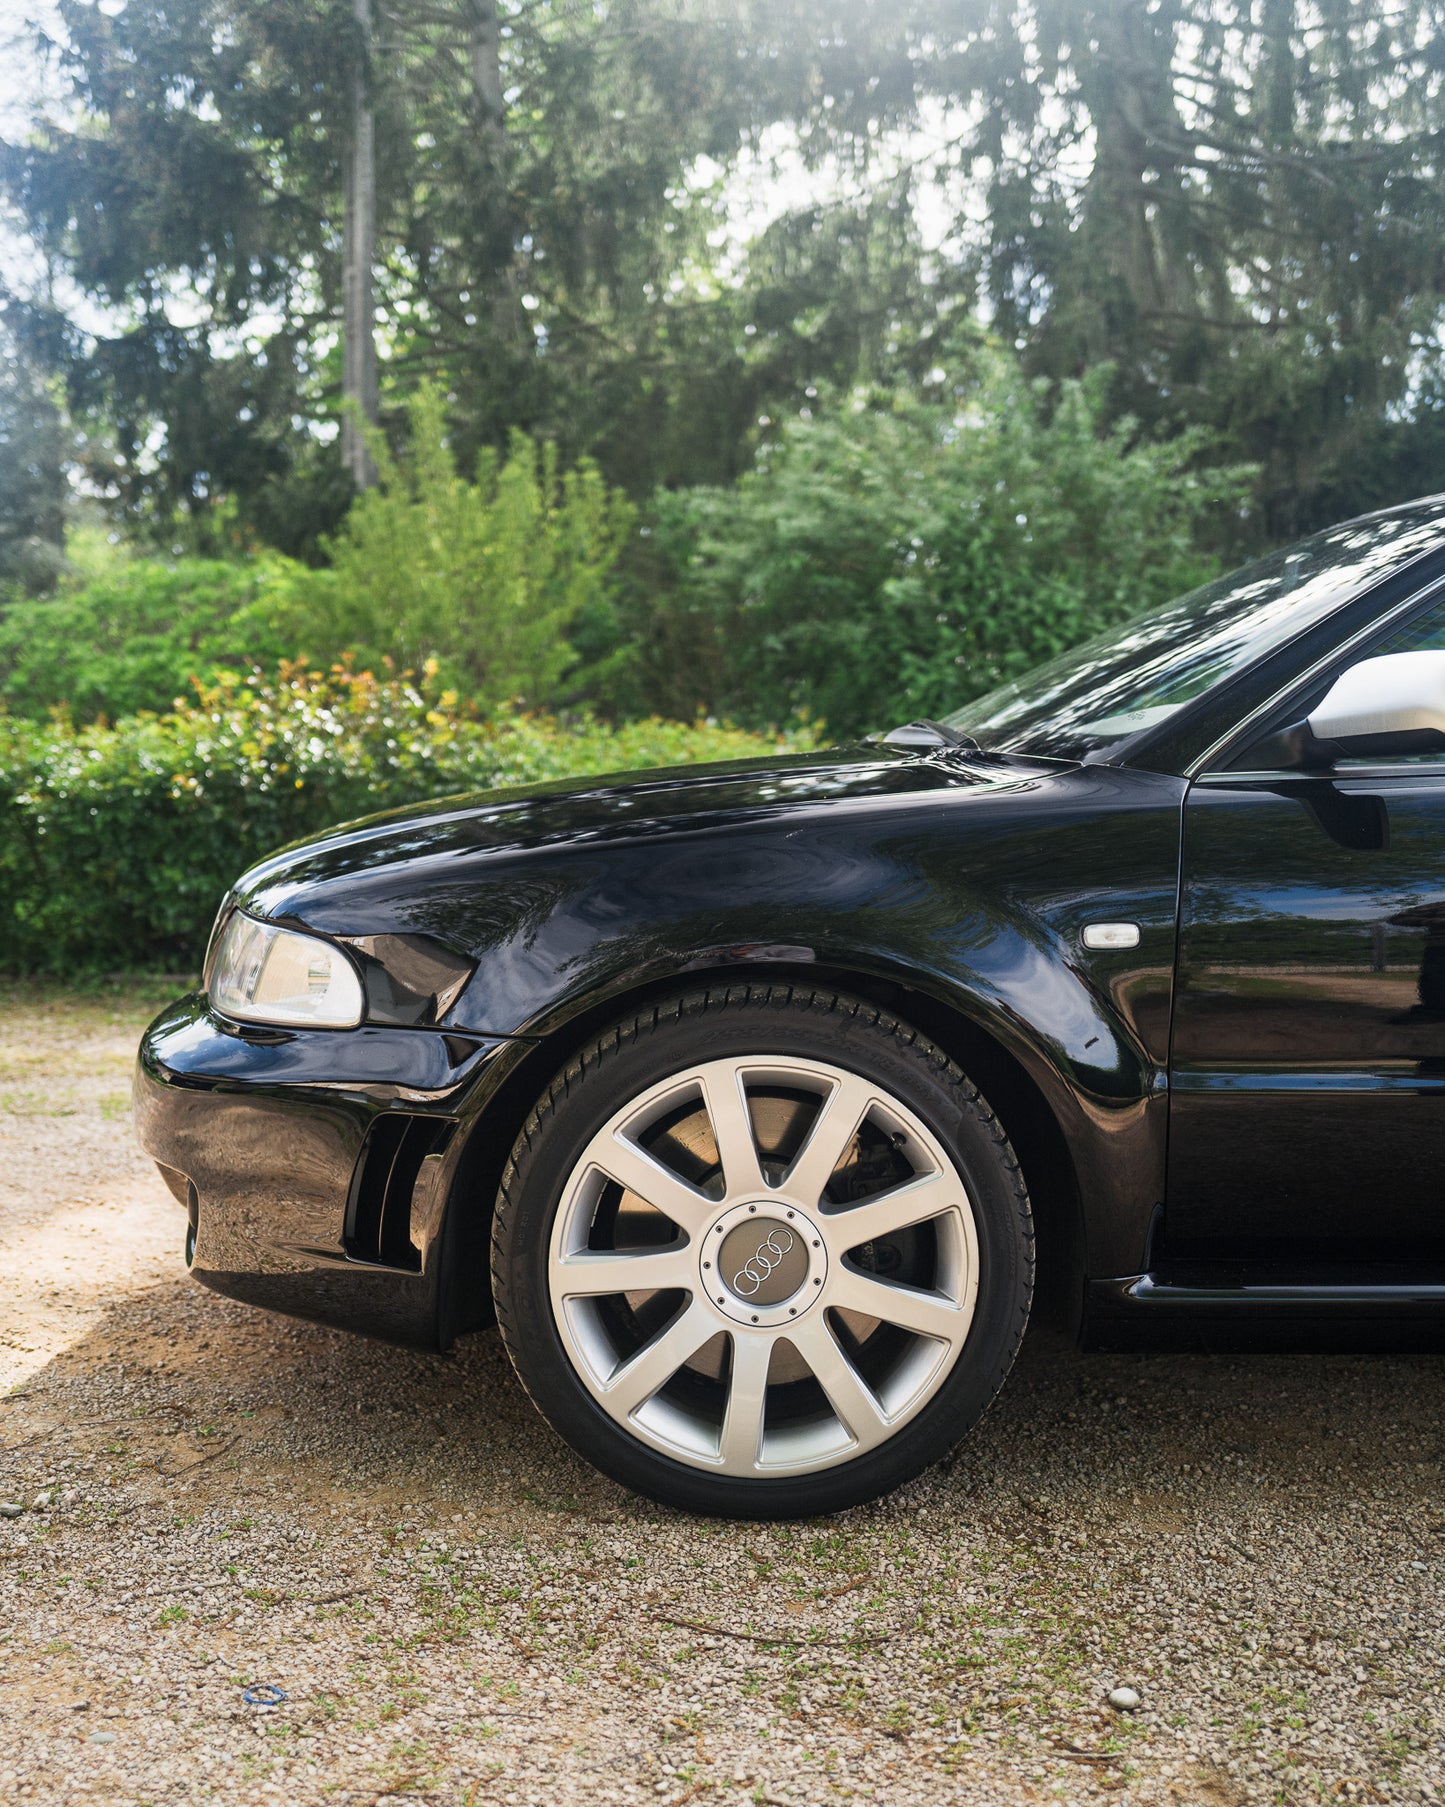 2001 Audi RS4 B5 2.7L BiTurbo